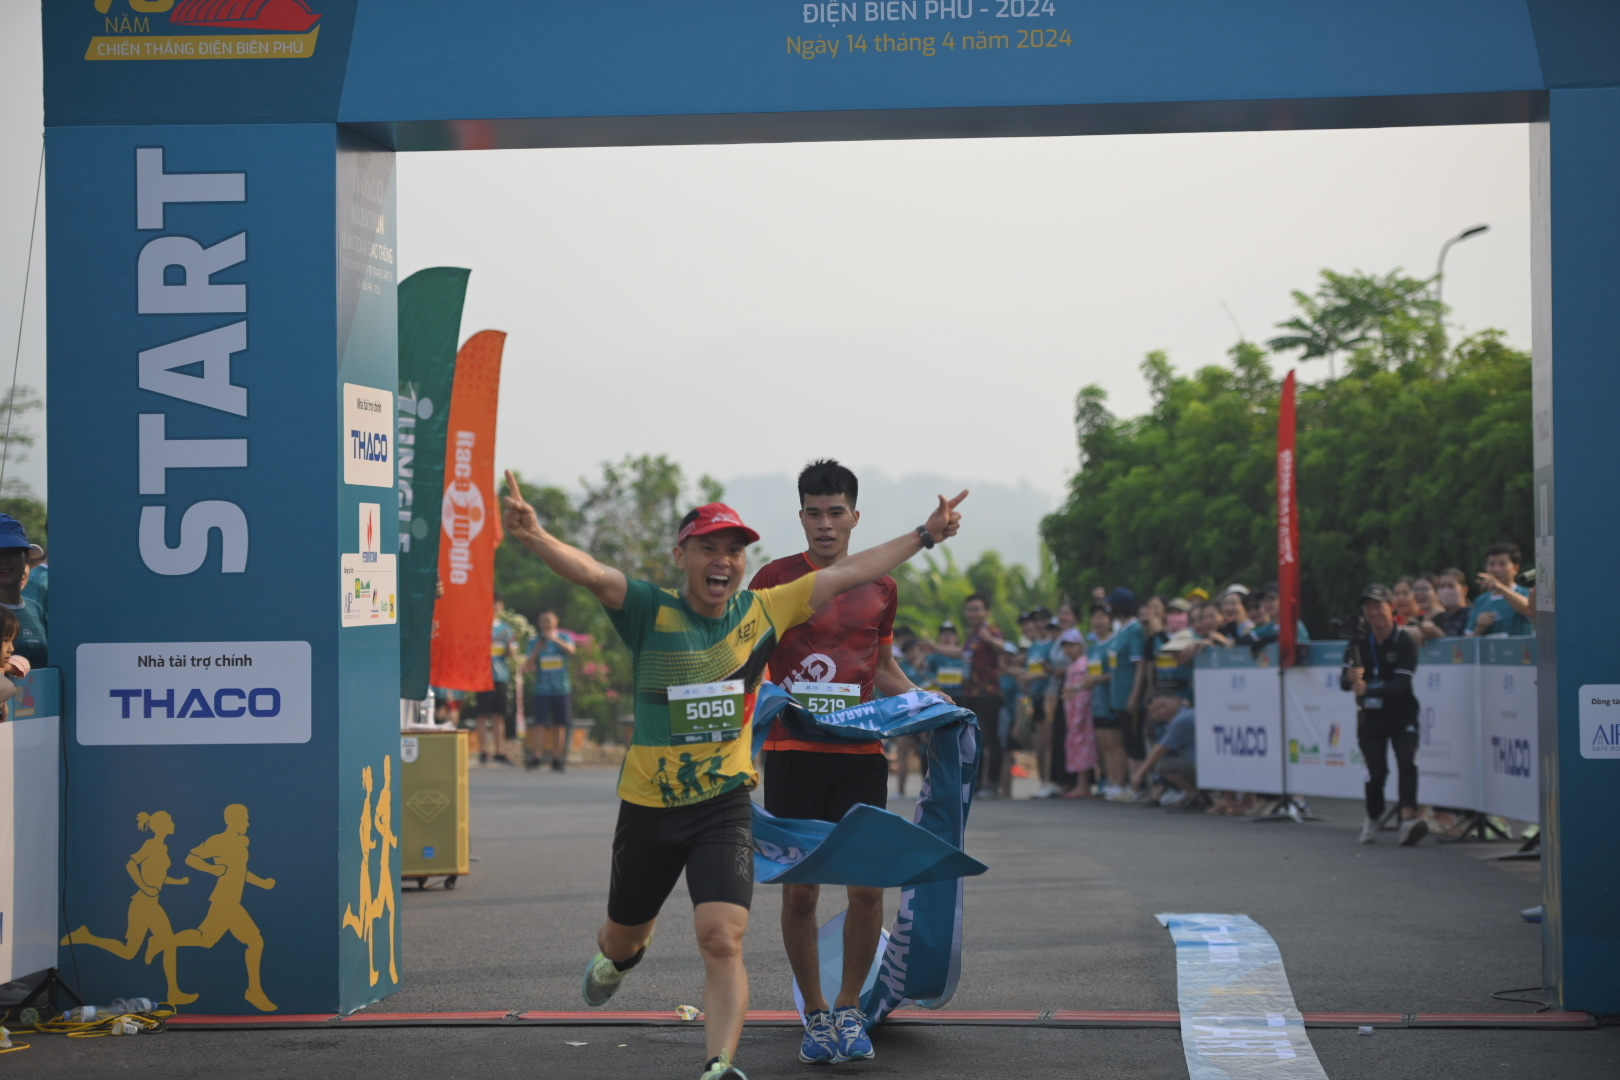 Trực tiếp: Giải THACO Marathon vì ATGT - Điện Biên Phủ 2024 thành công rực rỡ- Ảnh 29.